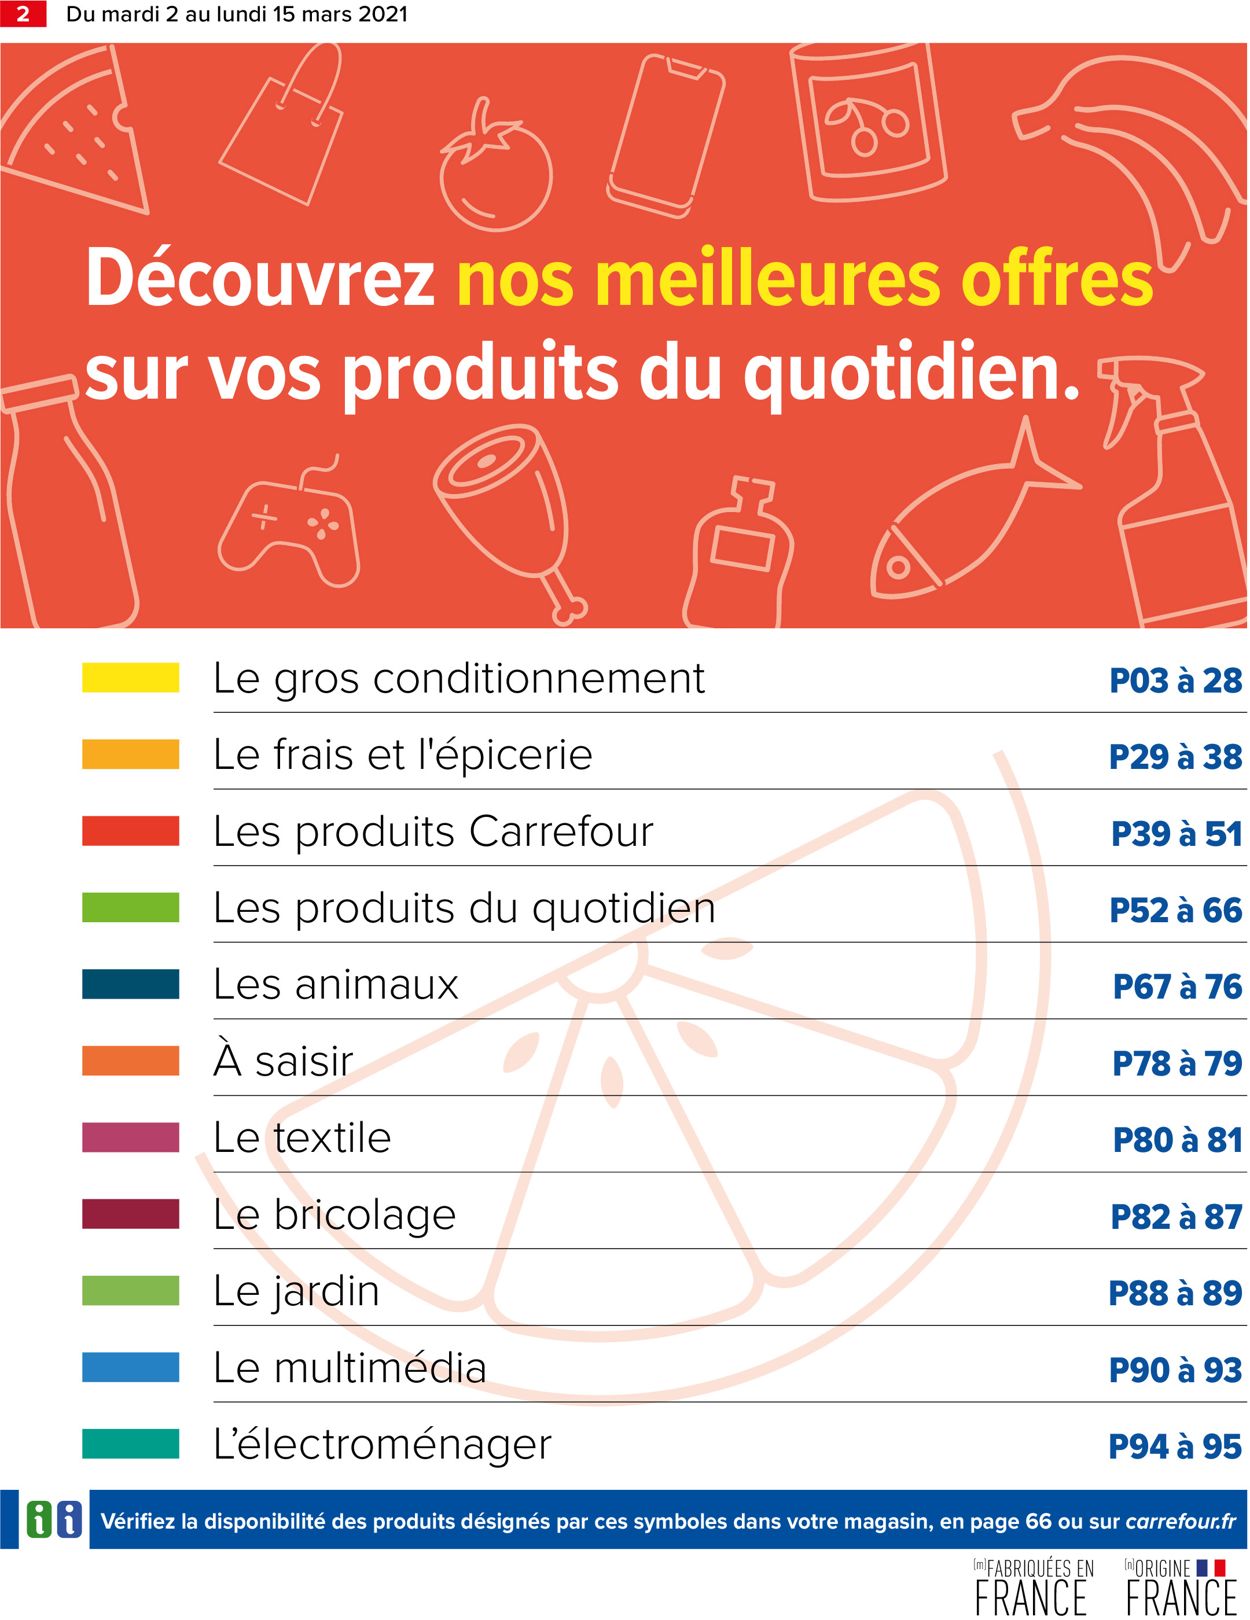 Carrefour Catalogue du 02.03.2021